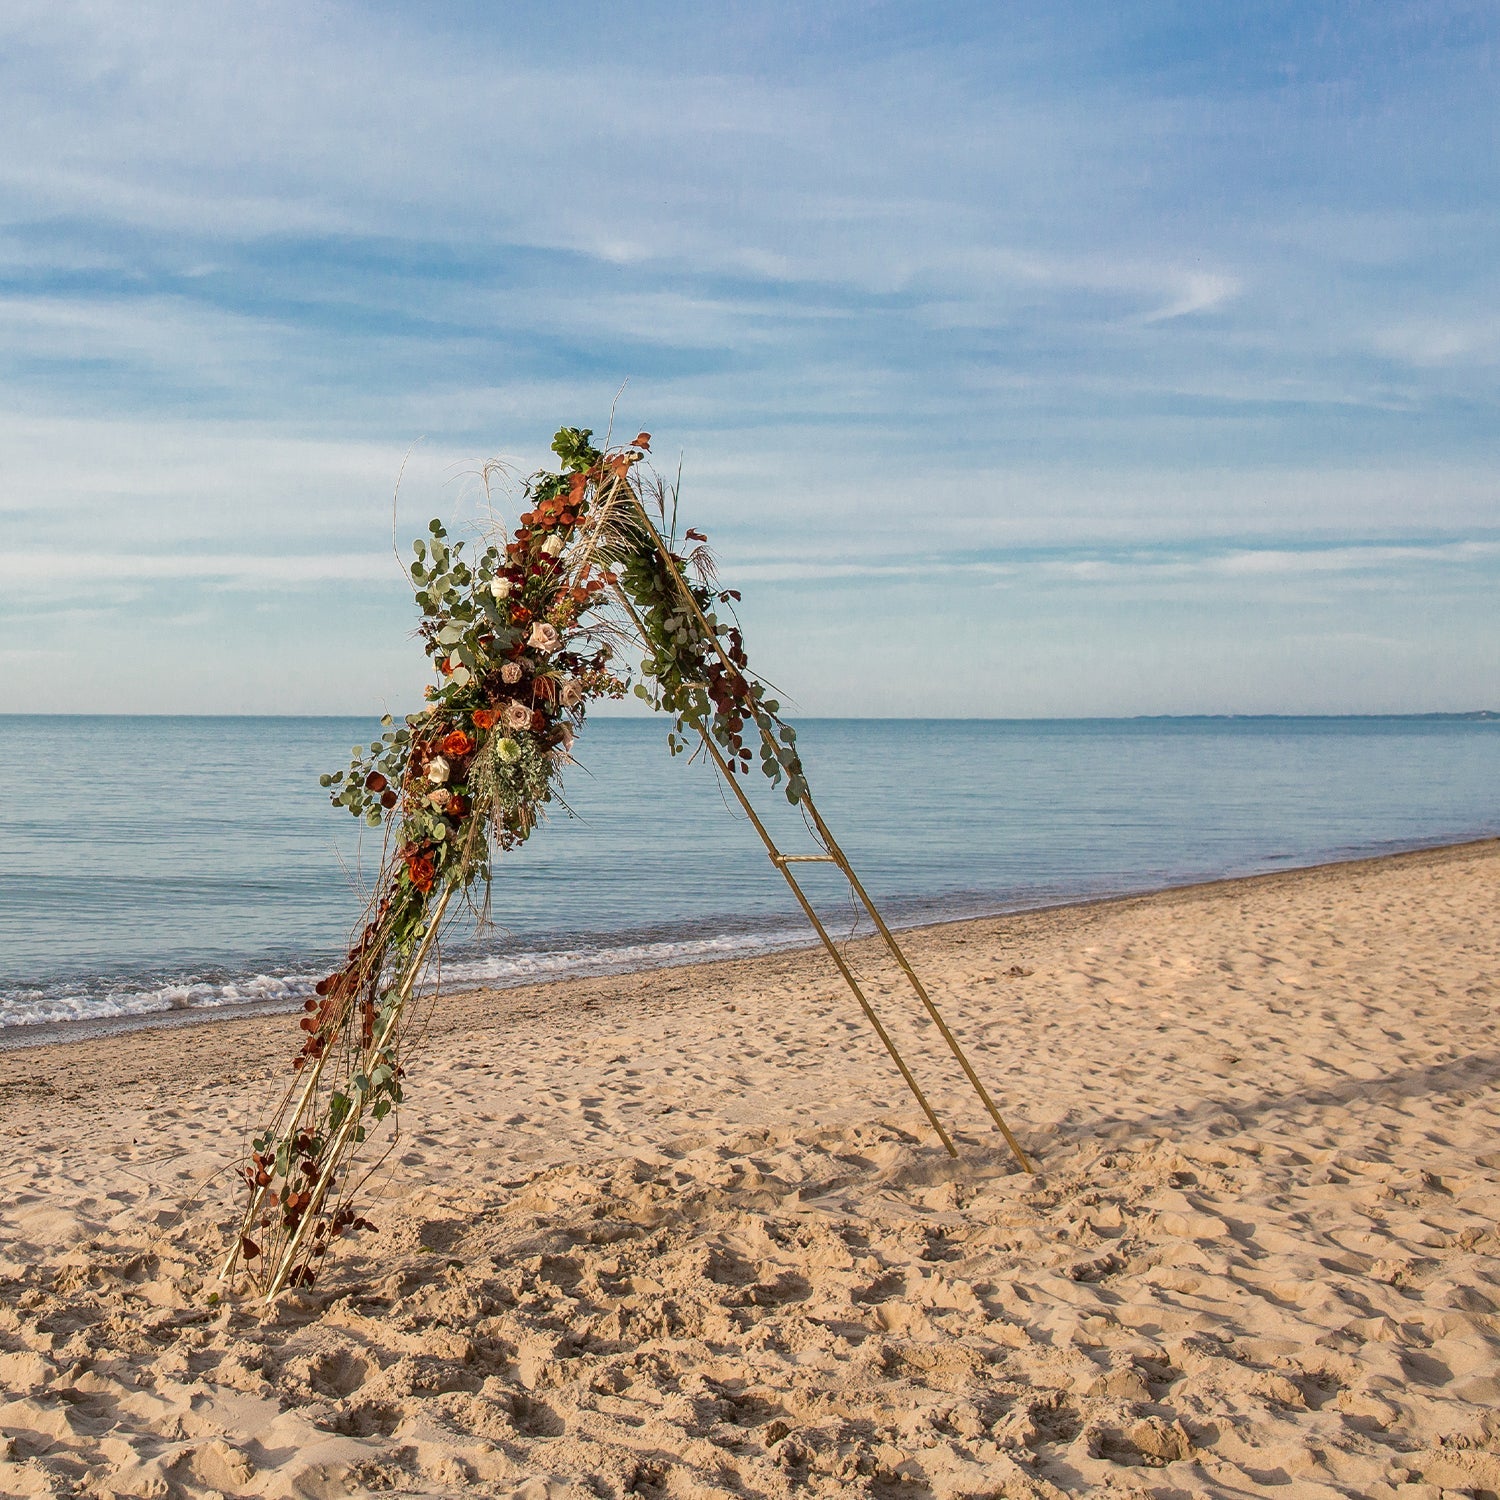 Triangular wedding arch on a beach - 46 & Spruce